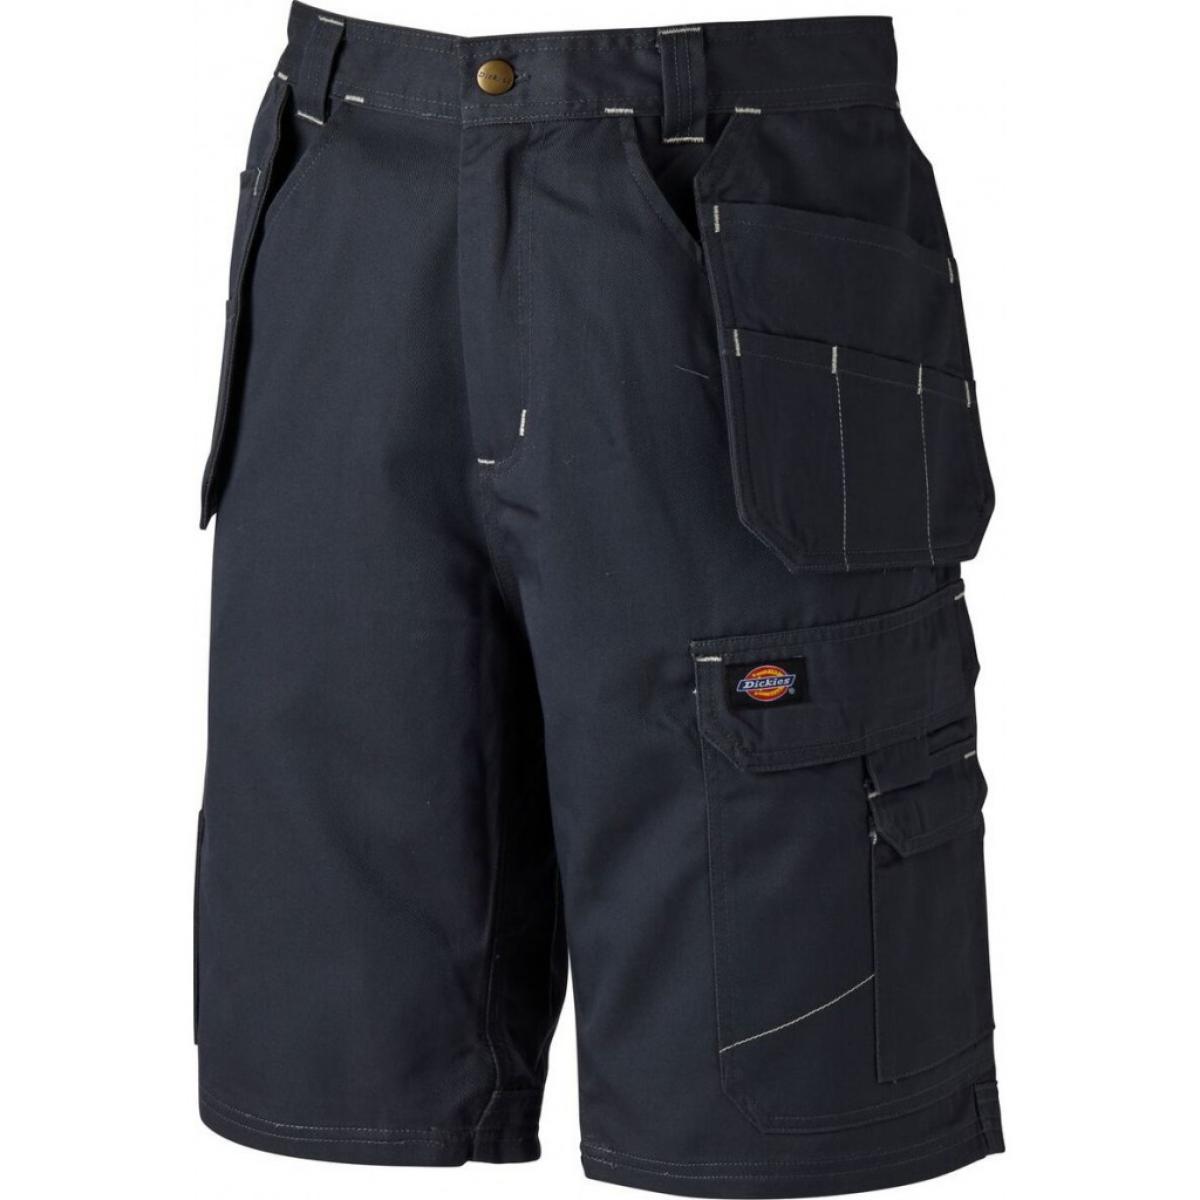 Hersteller: Dickies Herstellernummer: WD802 Artikelbezeichnung: Redhawk Pro Shorts - Arbeitsshorts Farbe: Grau